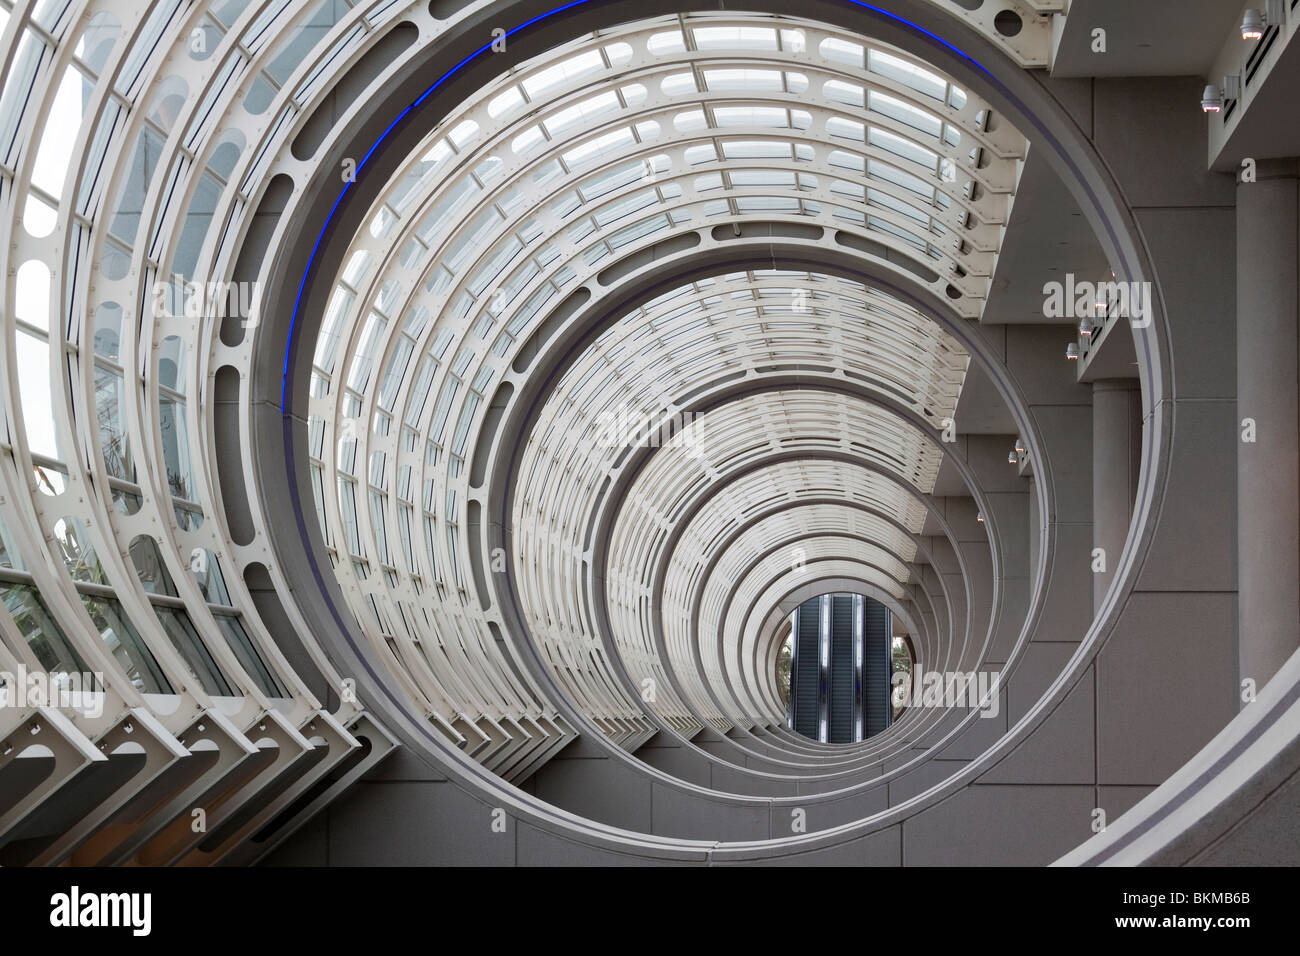 Konzentrische Kreise in der Decke des San Diego Convention Center Atriums führt zu drei Fahrtreppen Stockfoto